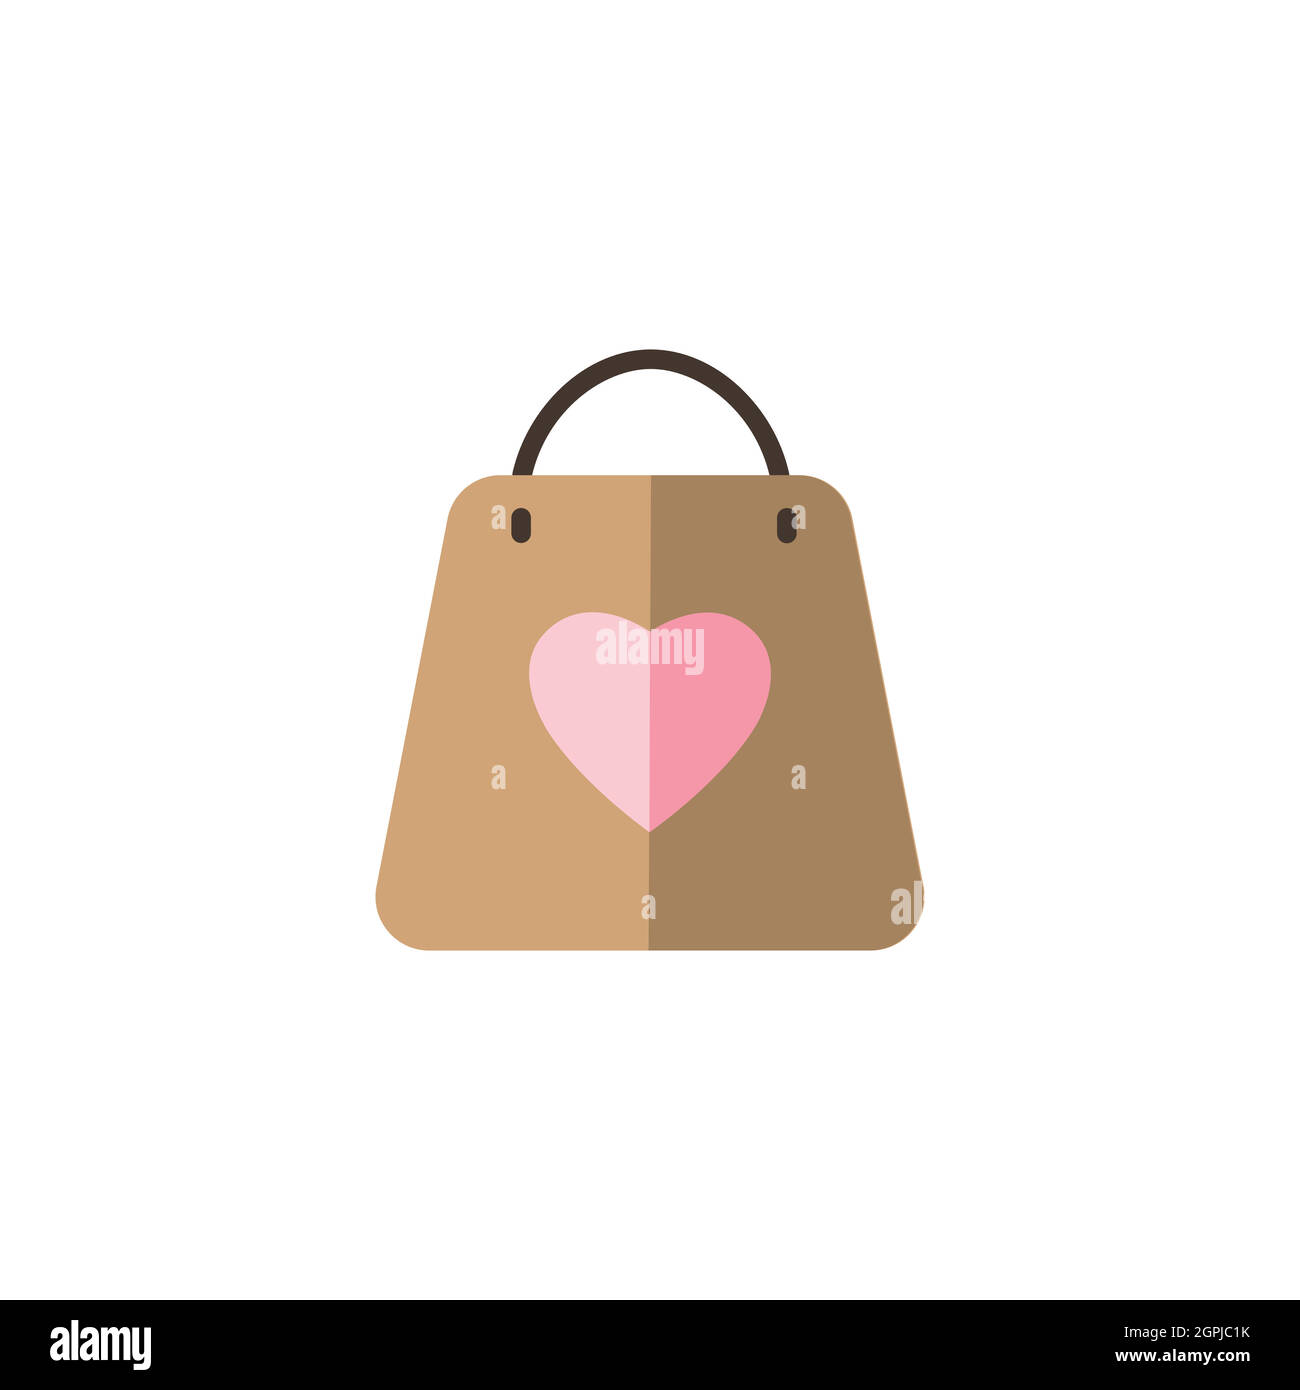 Shopping bag shape heart icon Banque d'images vectorielles - Alamy